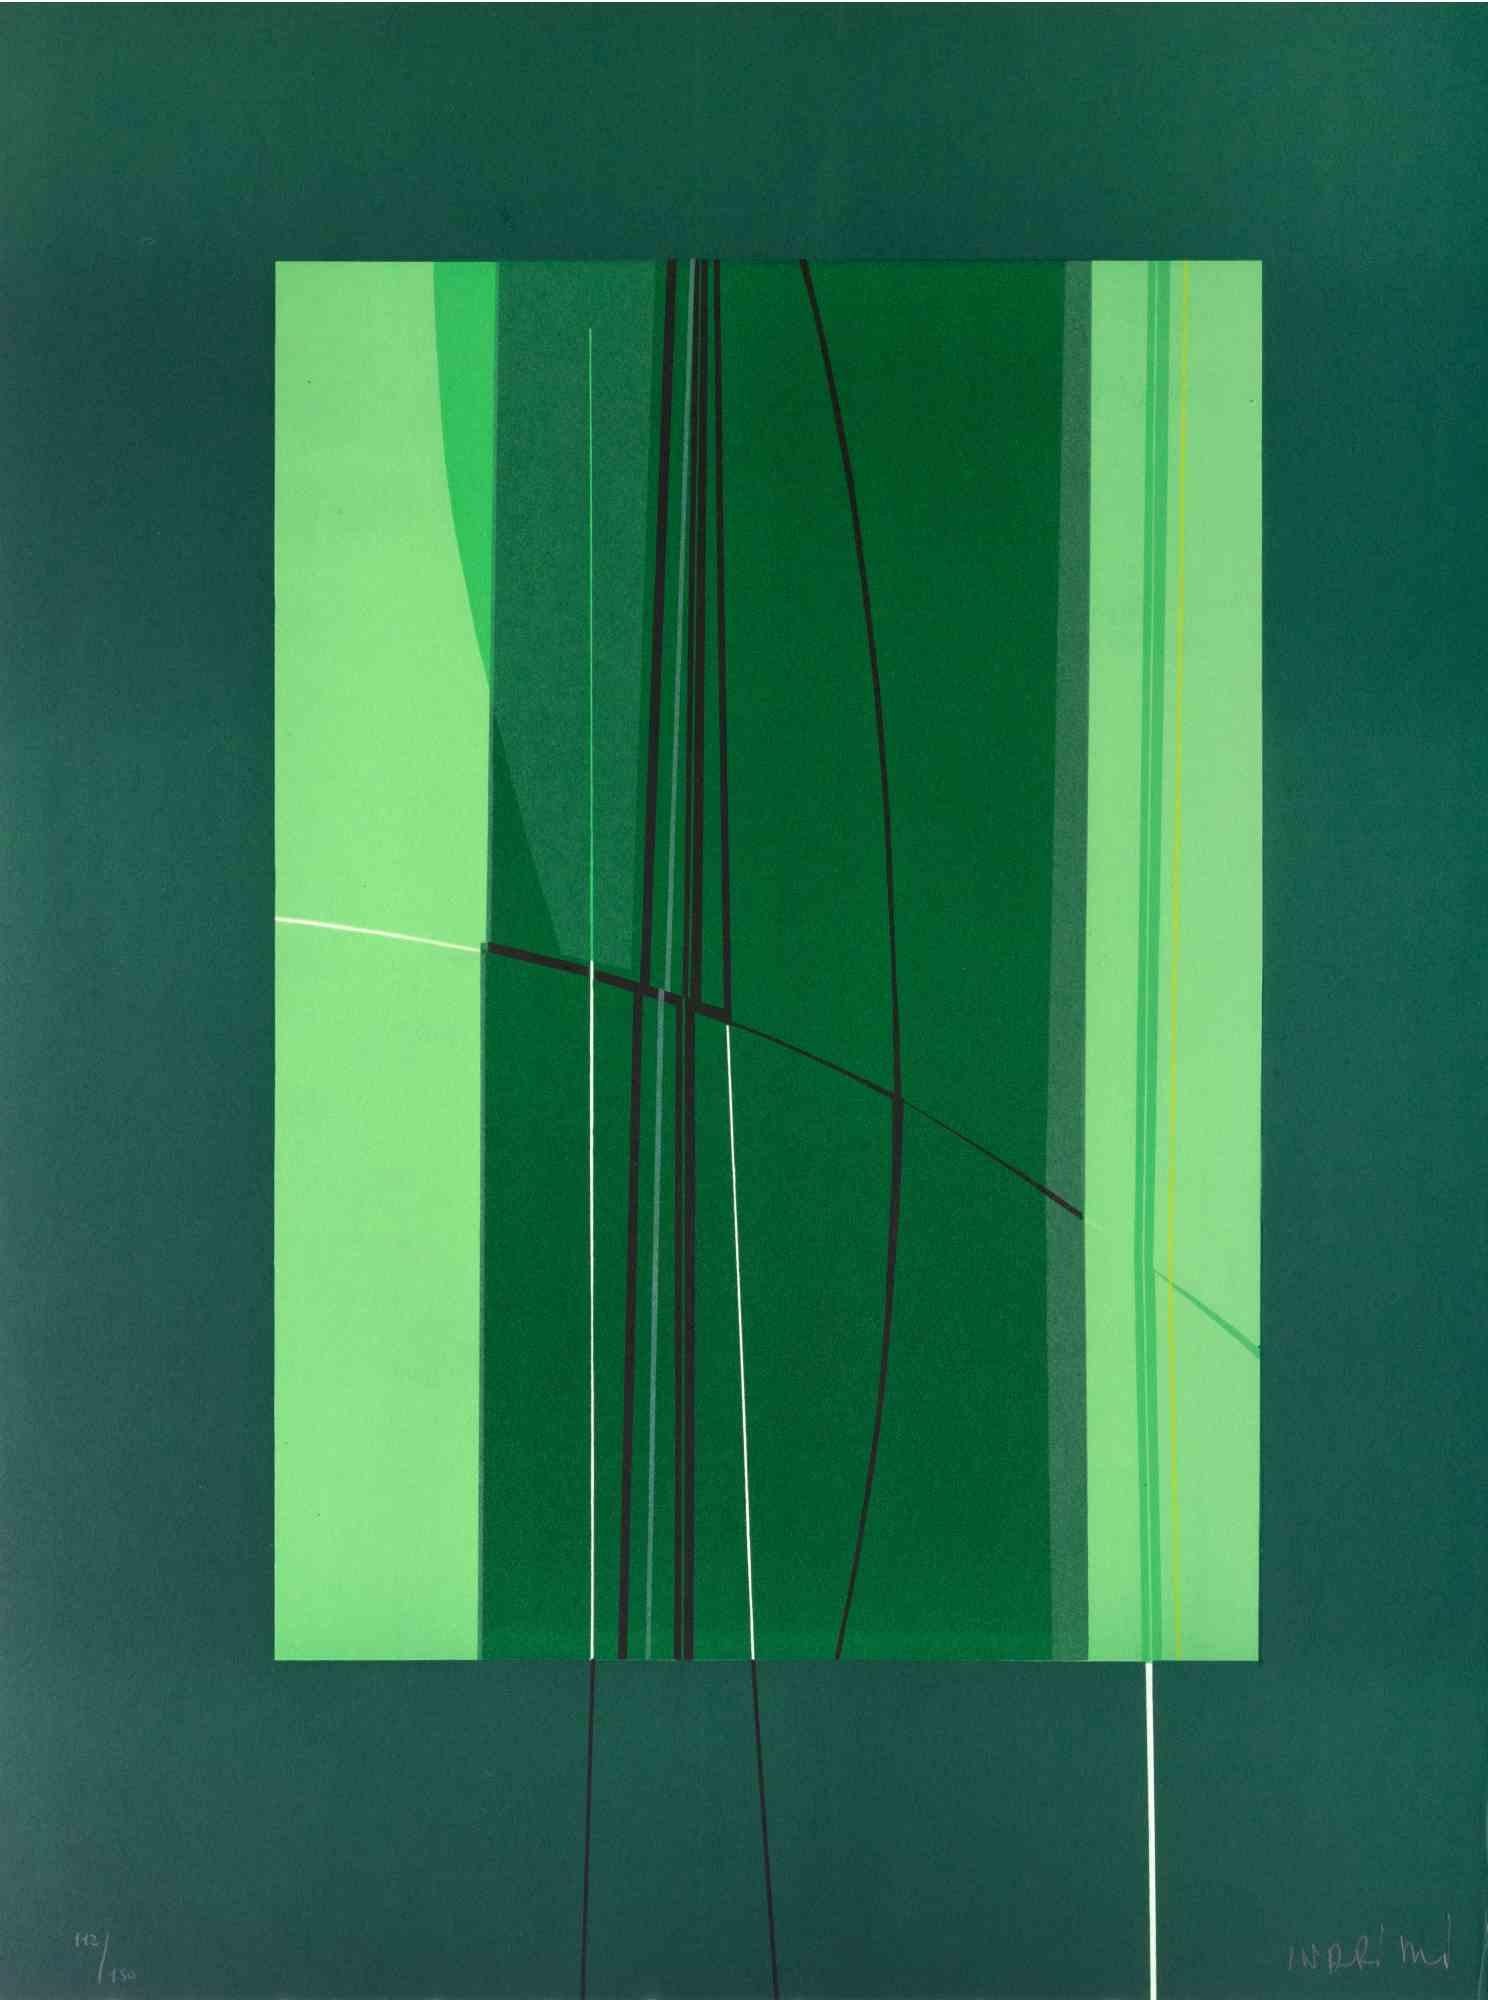 Green ist ein zeitgenössisches Kunstwerk von Lorenzo Indrimi aus den 1970er Jahren.

Gemischtfarbige Lithographie.

Am unteren Rand handsigniert und datiert.

Auflage von 112/150.